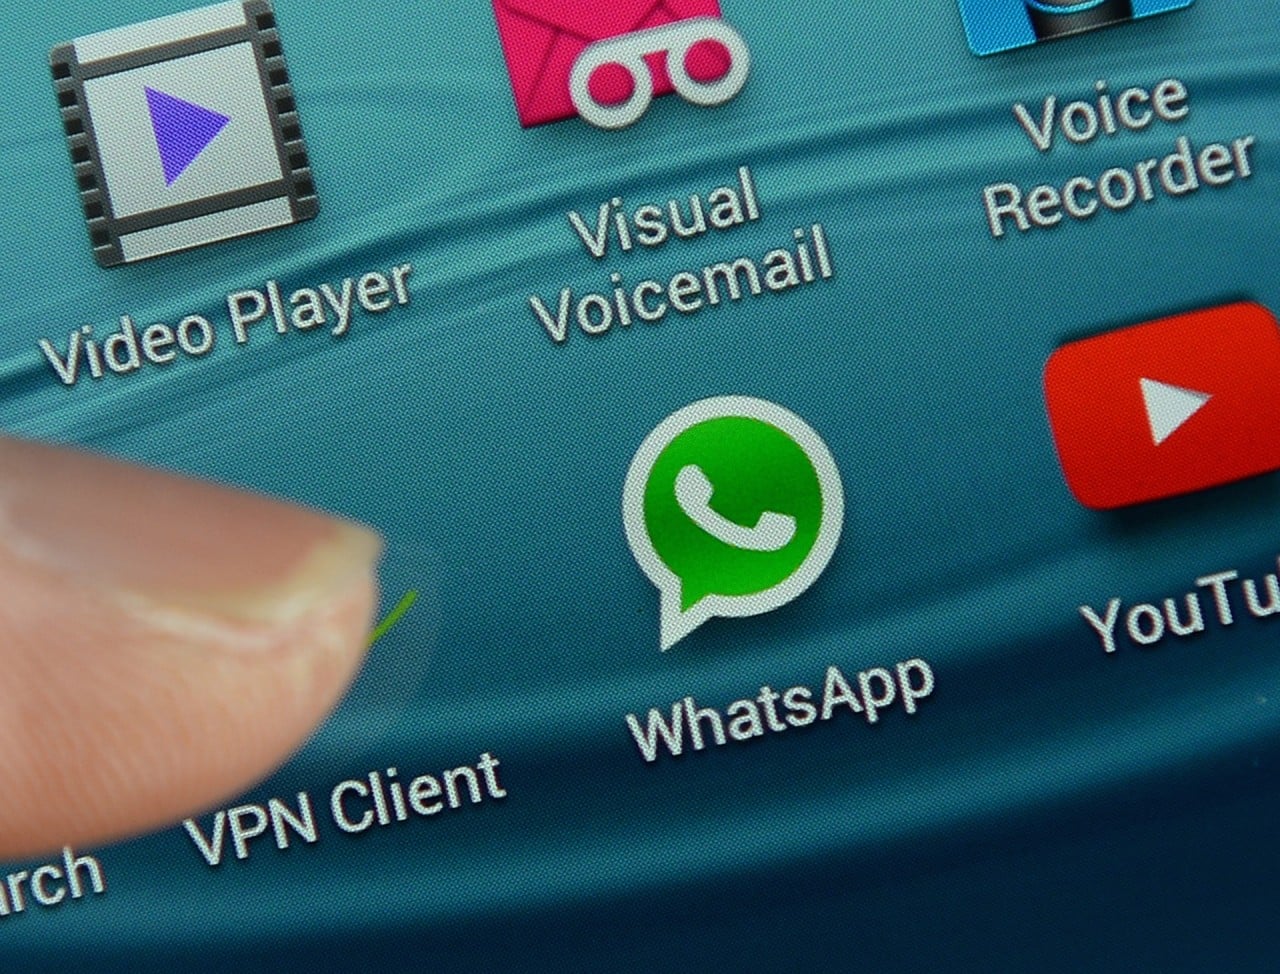 Attenzione ai falsi messaggi per attivare le chiamate su WhatsApp!